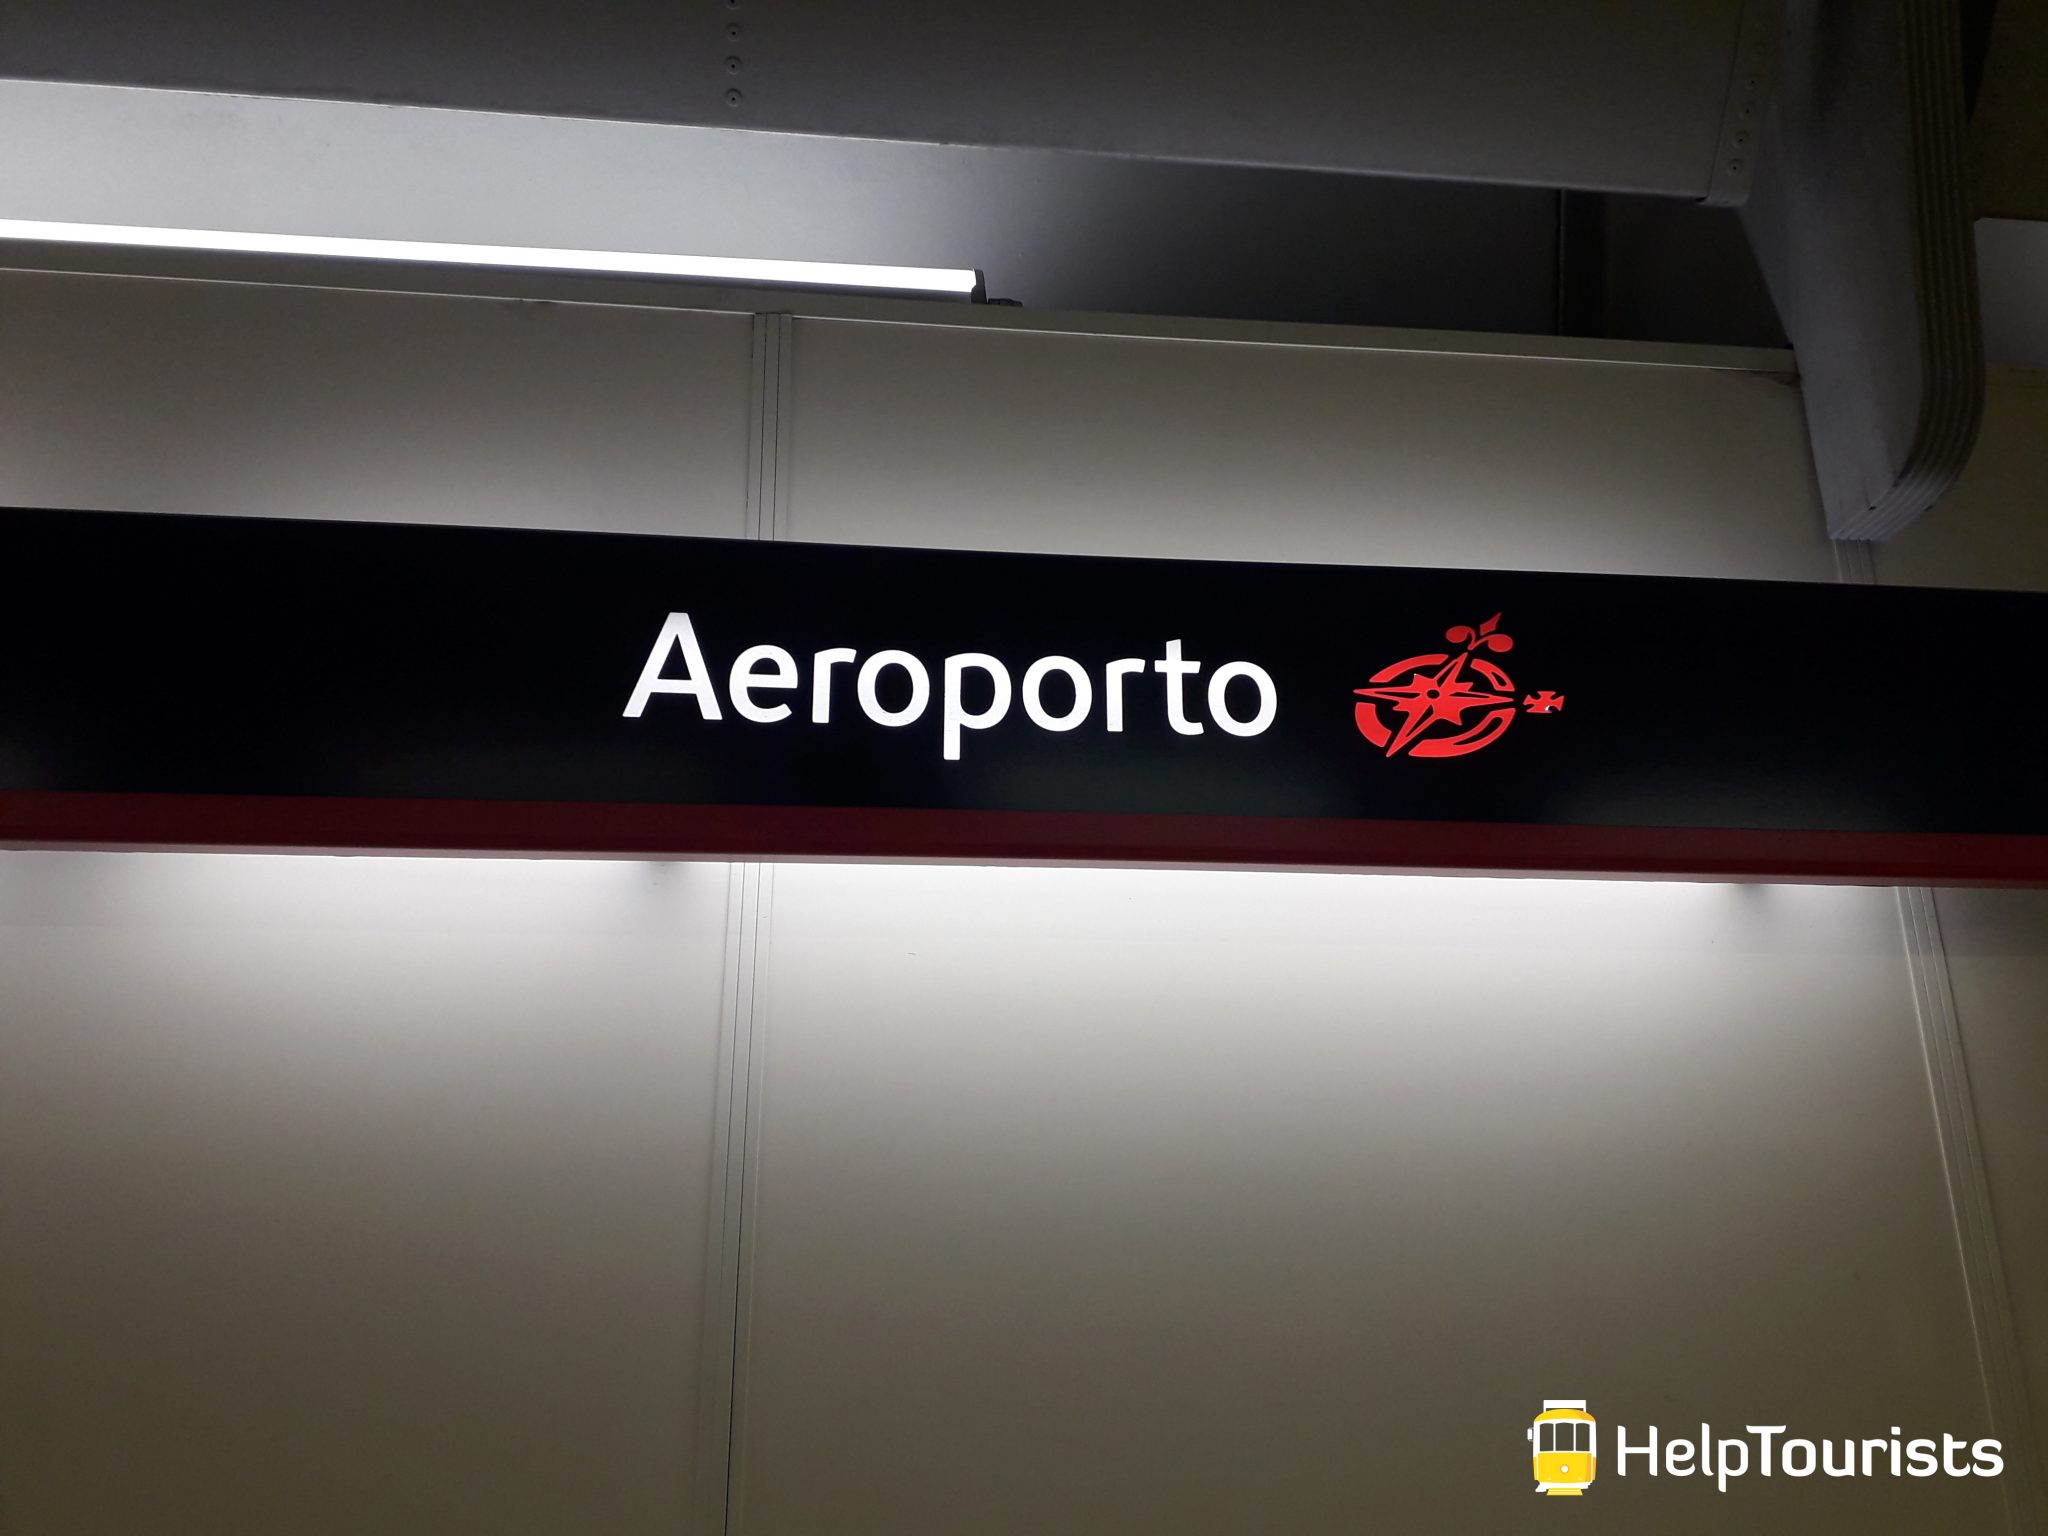 Lisbonne aeroport métro station aeroporto